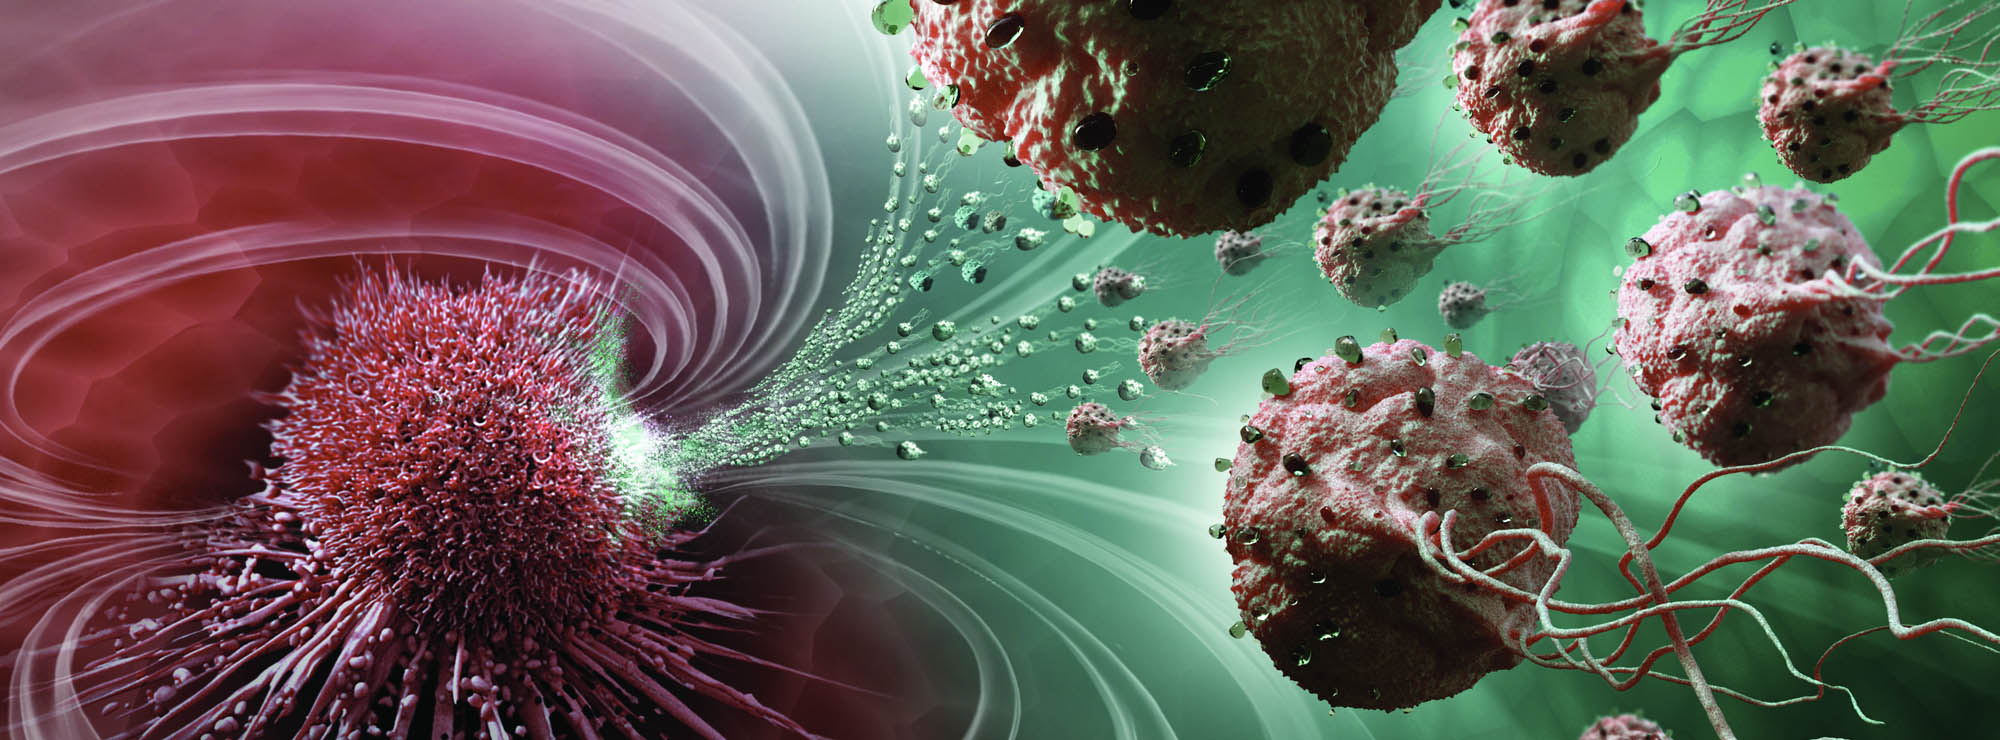 Imagem de agentes nanorrobóticos circulando pelo sangue atacando células cancerosas. As cores predominantes são o vermelho escuro e o verde claro.